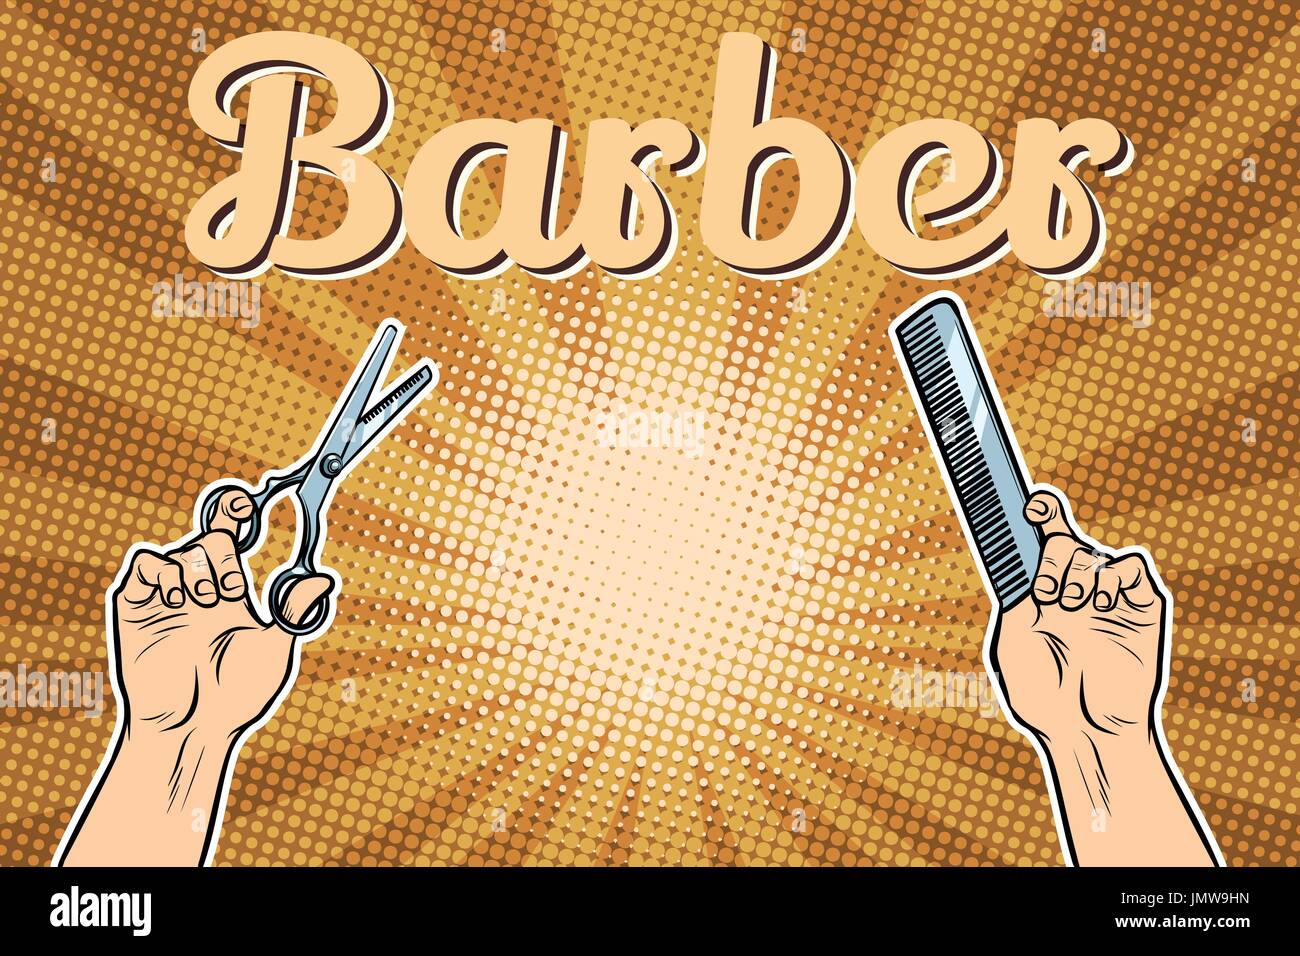 Barber Shop Hintergrund, die Hände mit Schere und Kamm Stock Vektor